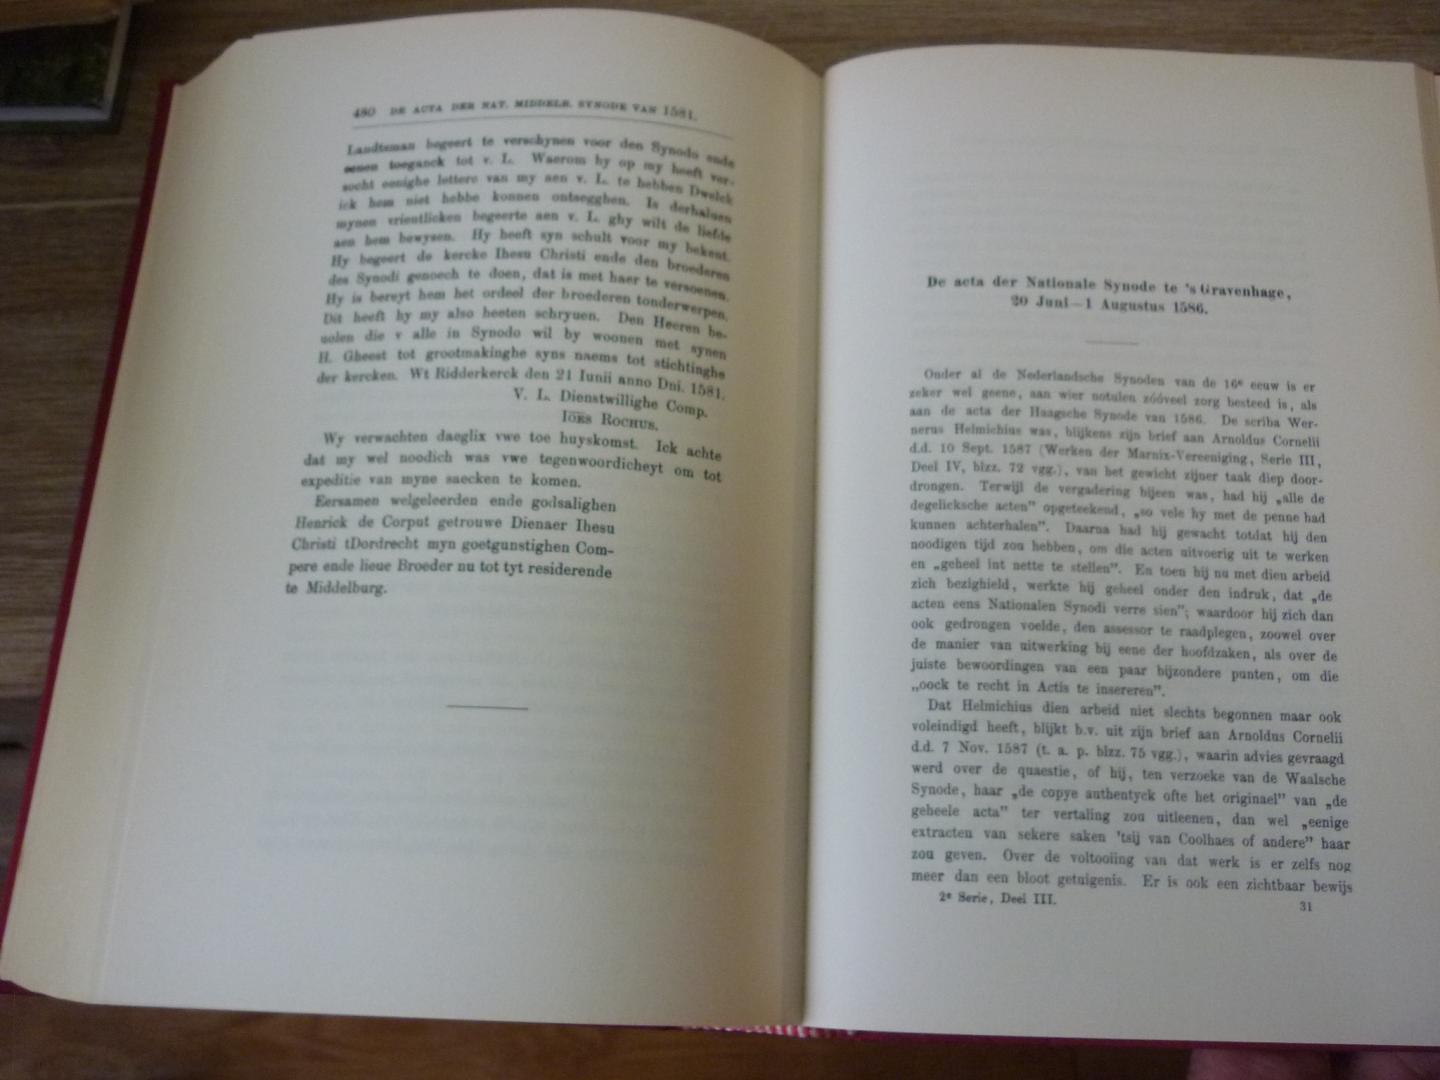 Rutgers, F.L. (verzameld en uitgegeven) - Acta van de Nederlandsche Synoden der zestiende eeuw  -  verzameld en uitgegeven door F.L. Rutgers.